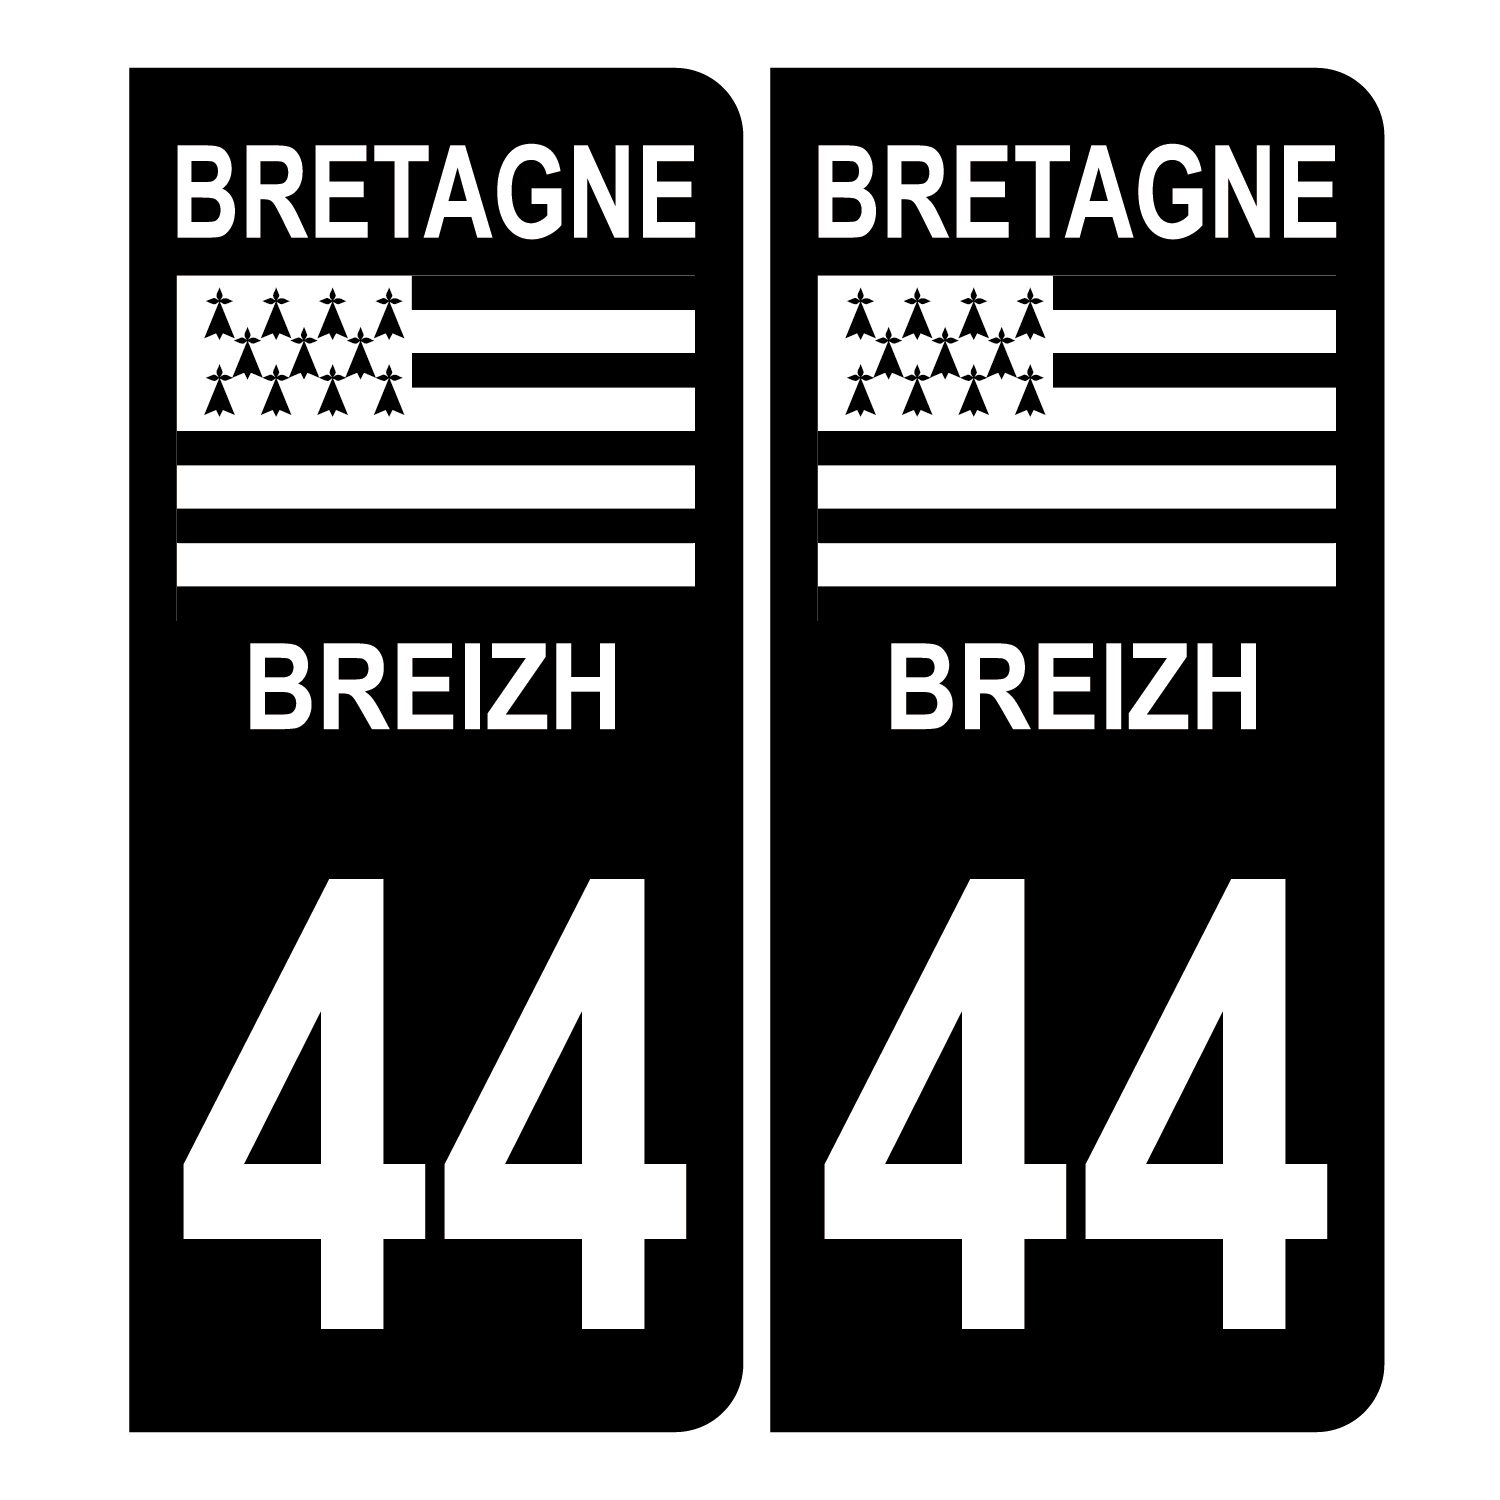 35 Ille et Vilaine fond noir Bretagne Breizh sticker autocollant plaque  immatriculation auto